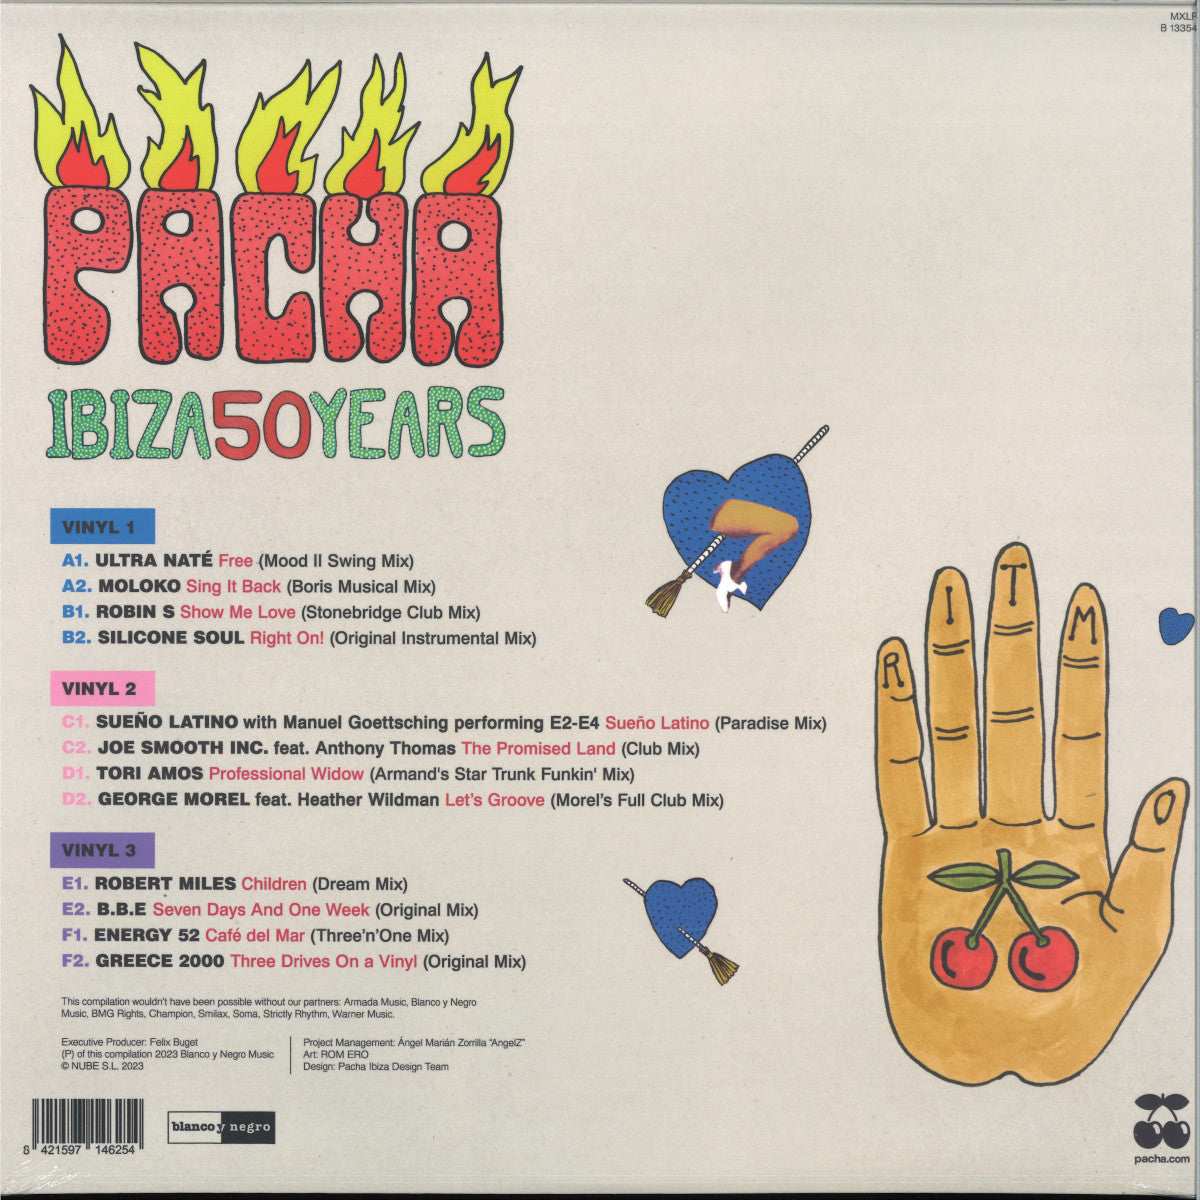 V/A - Pacha Ibiza 50 Years LP 3x12" [Blanco y Negro]